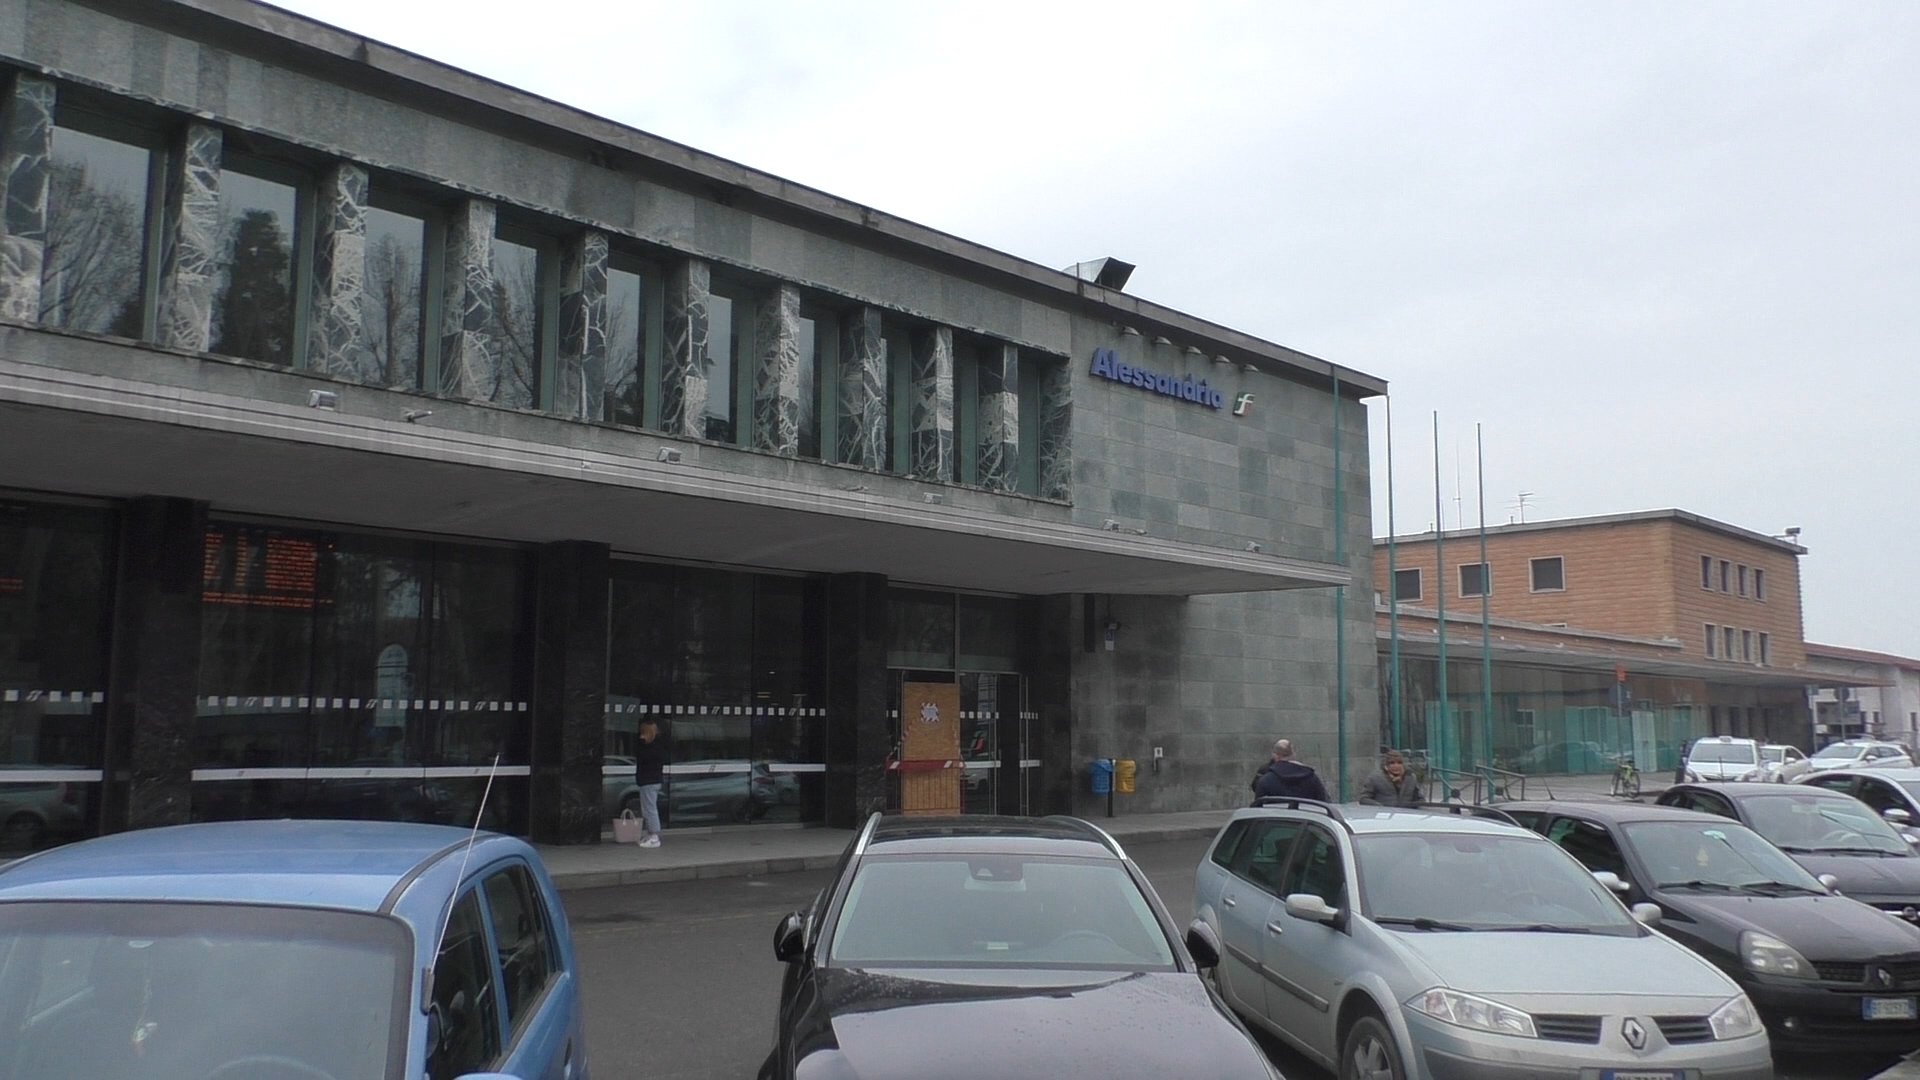 Riqualificazione della stazione ferroviaria di Alessandria: lavori al via dal 2022